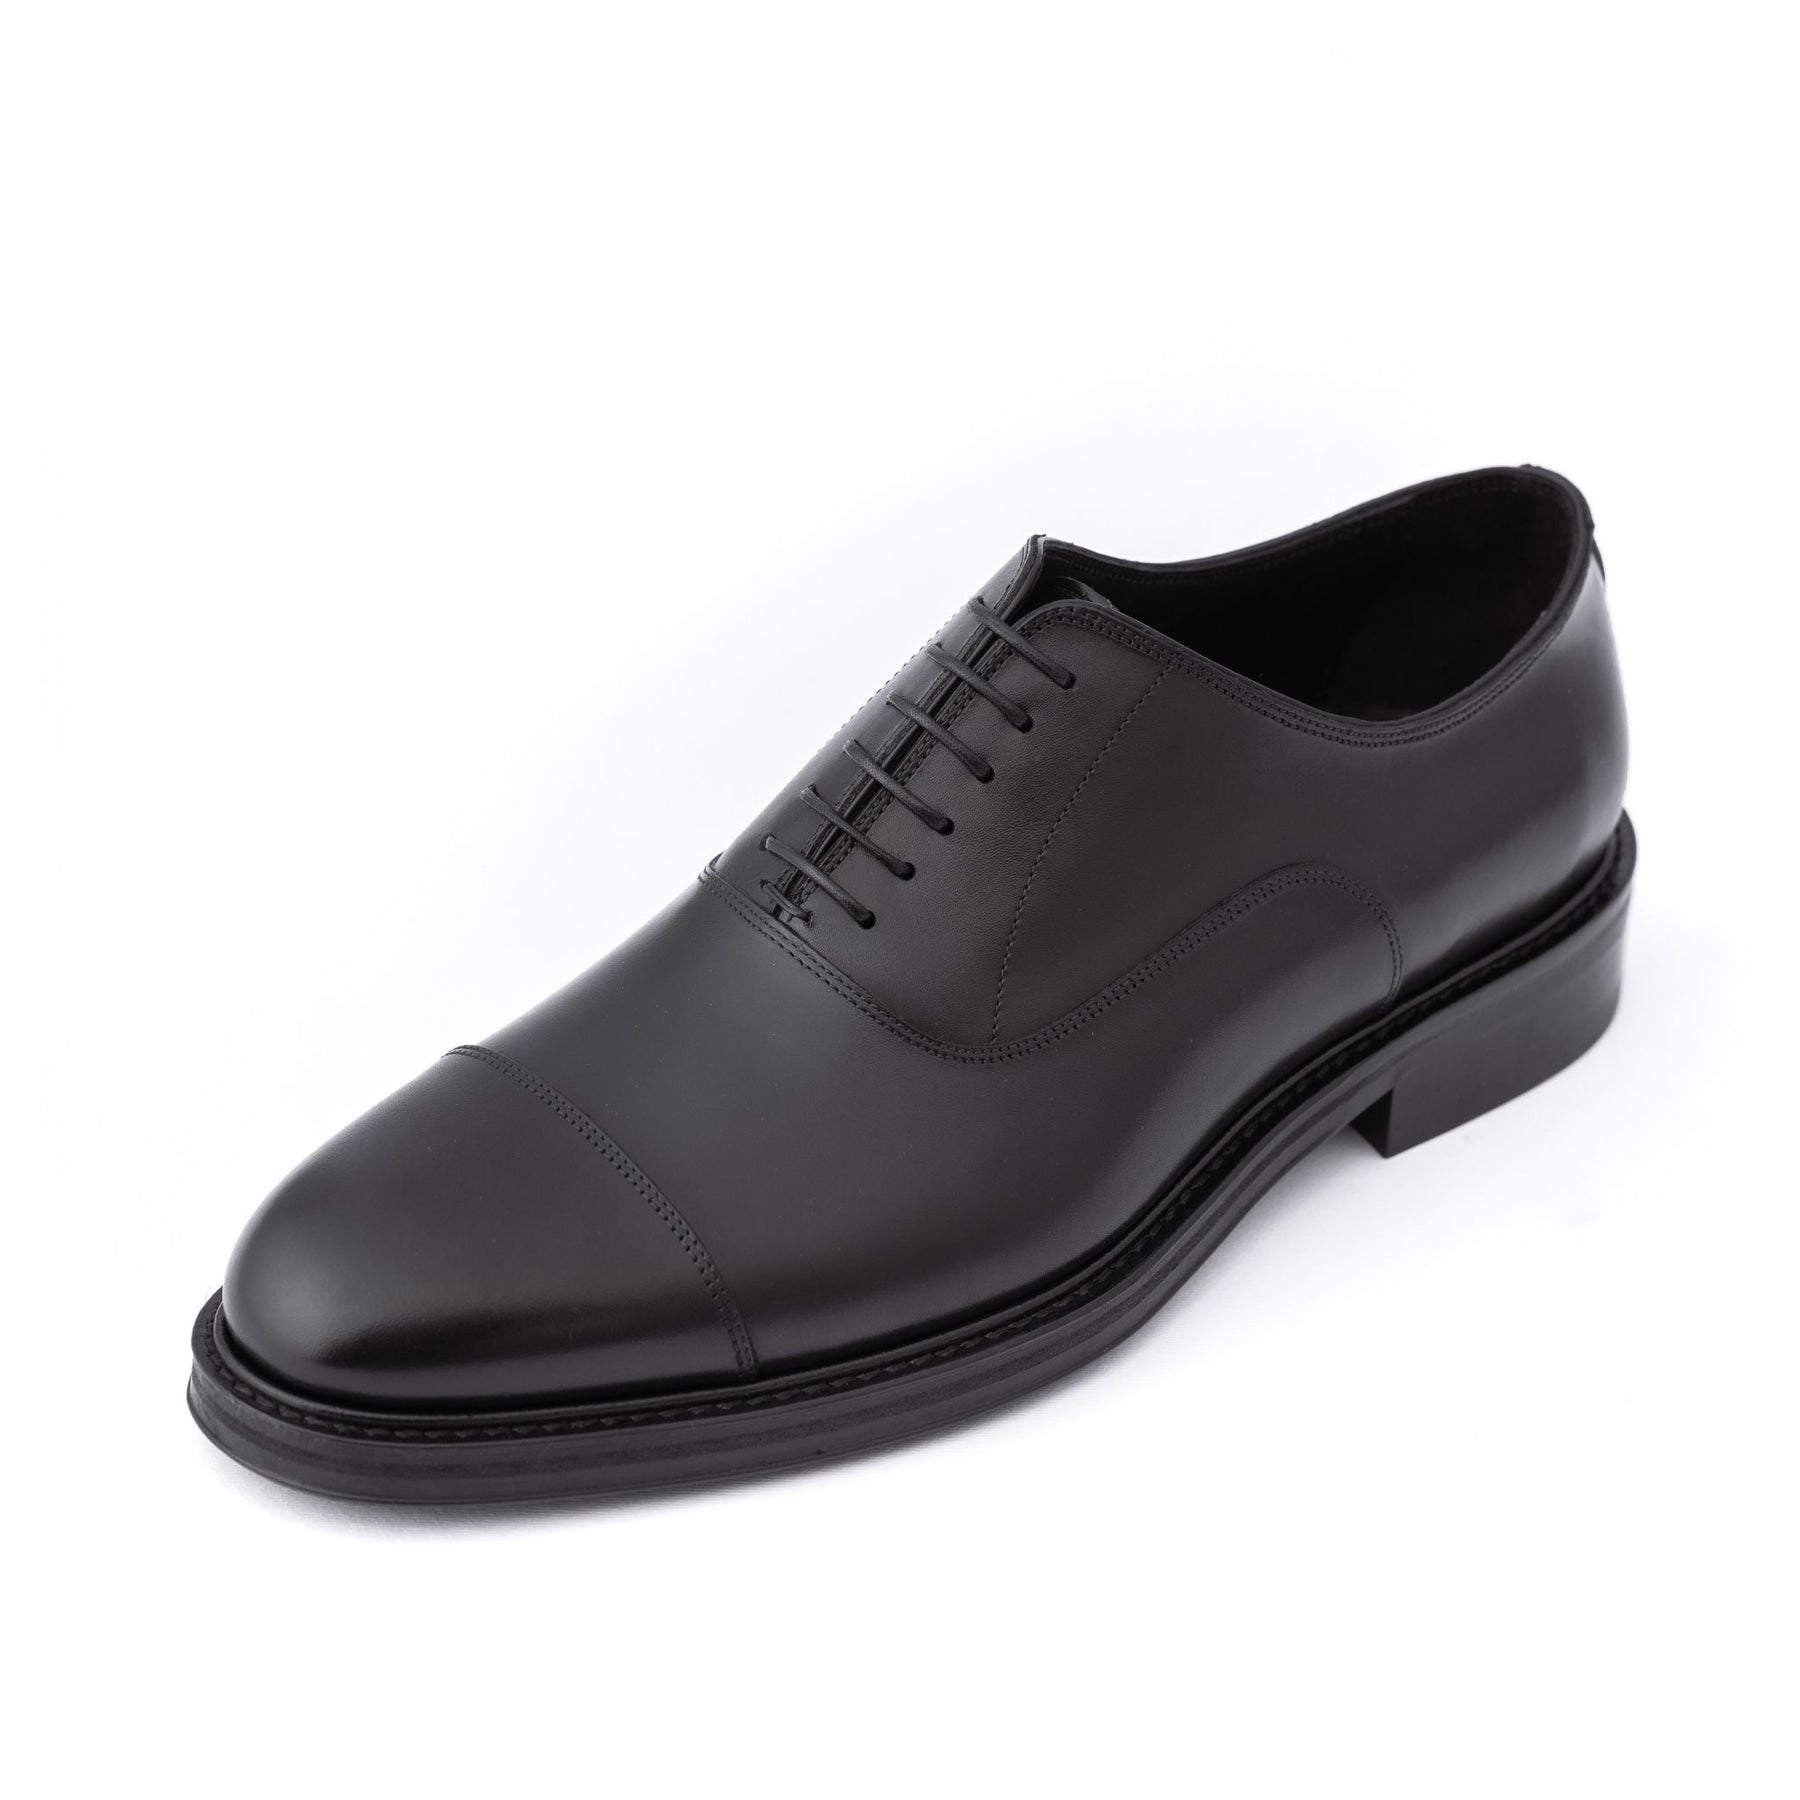 Regent CL Oxford Shoes | Black